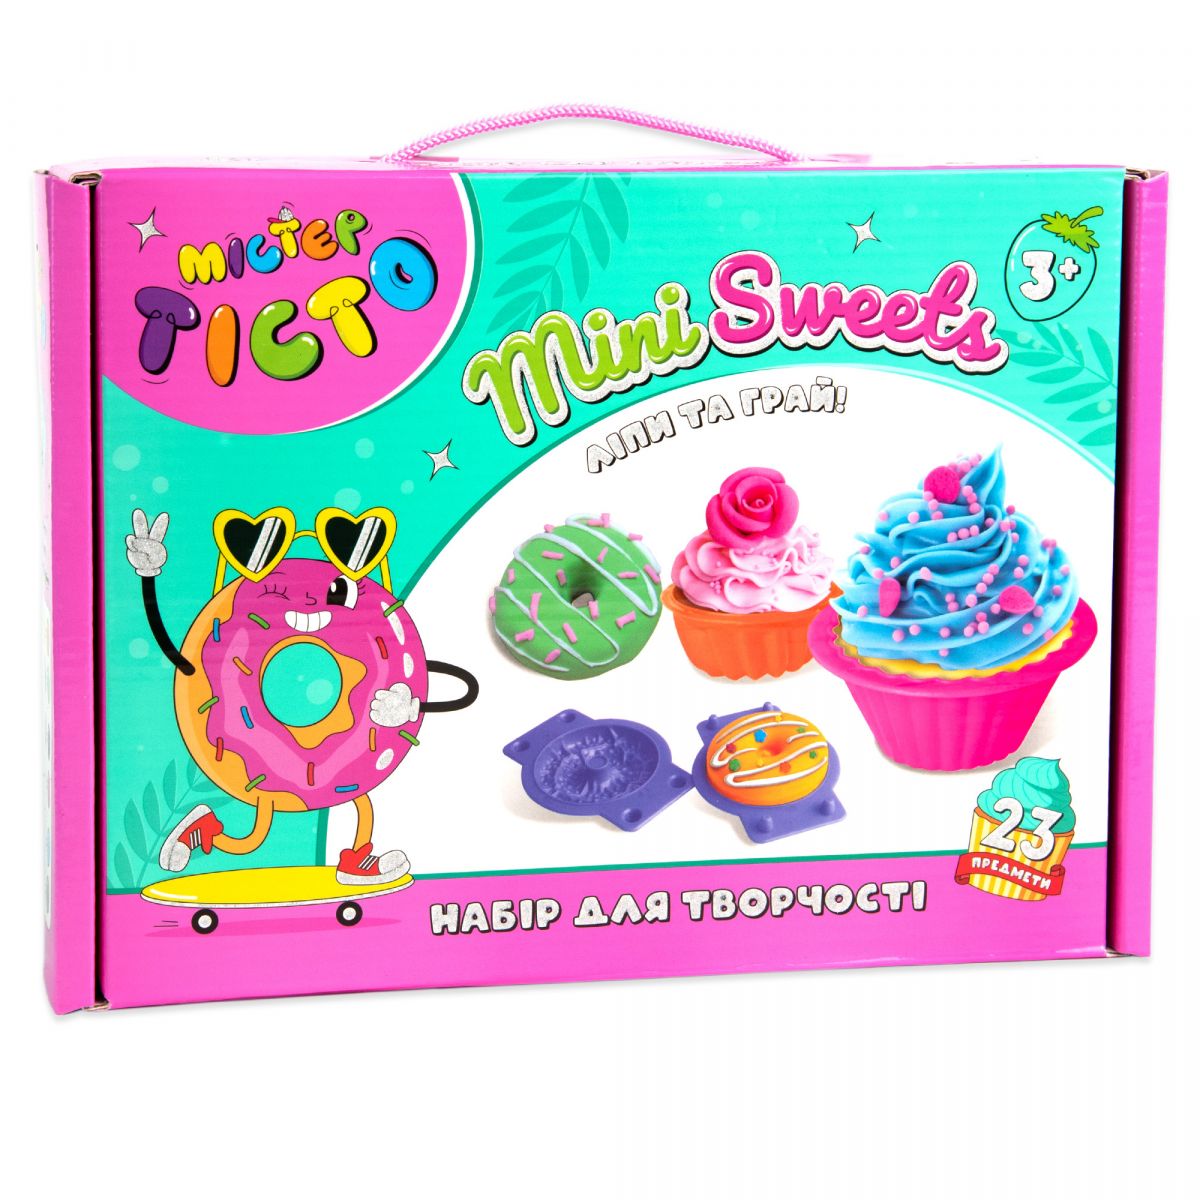 Набір для творчості "Містер тісто: Mini Sweets" (укр)